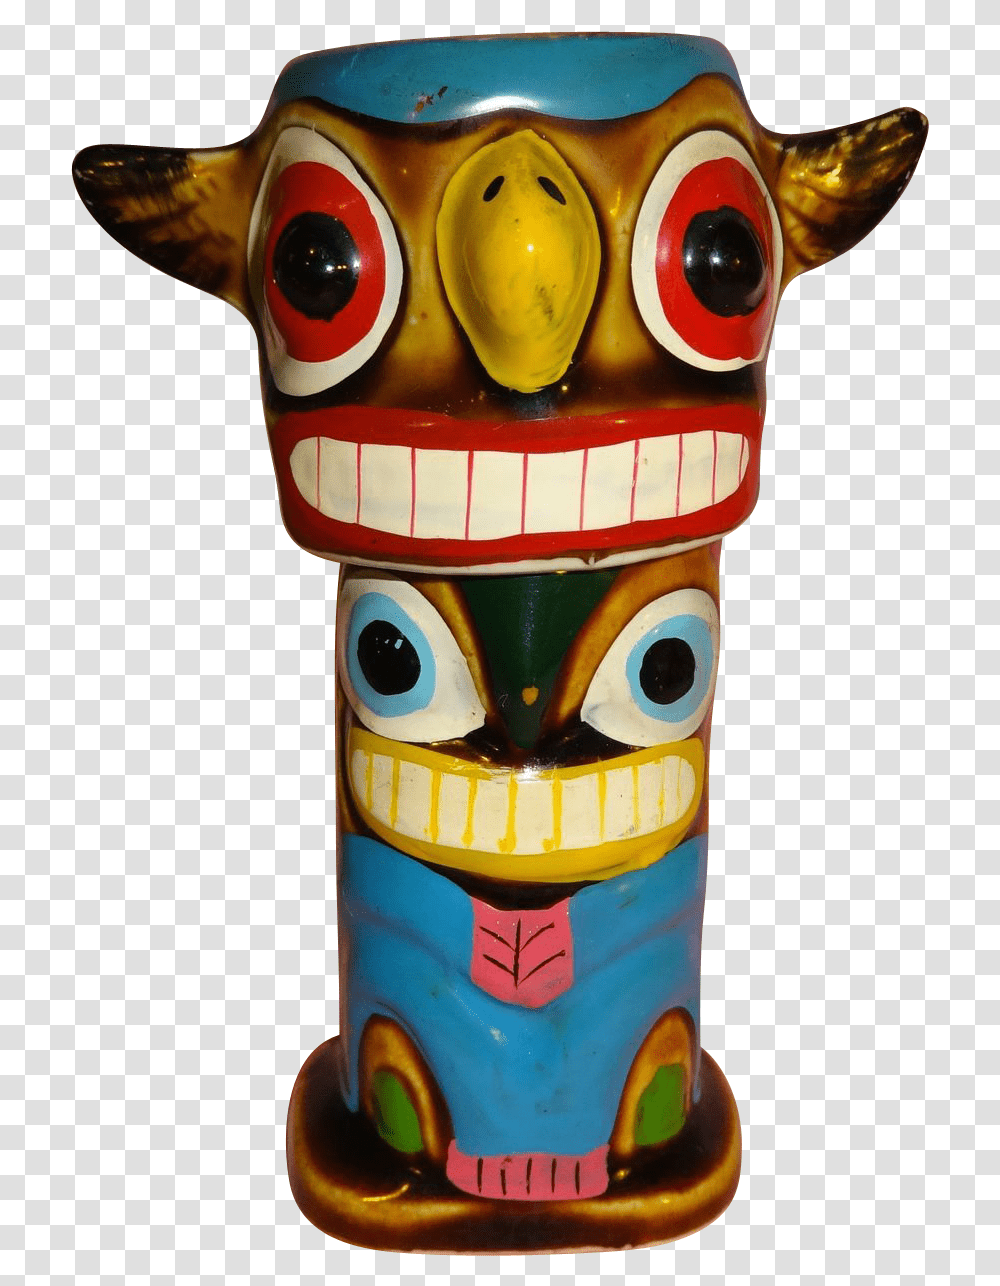 Totem Pole Animal Figure, Toy, Architecture, Building, Emblem Transparent Png